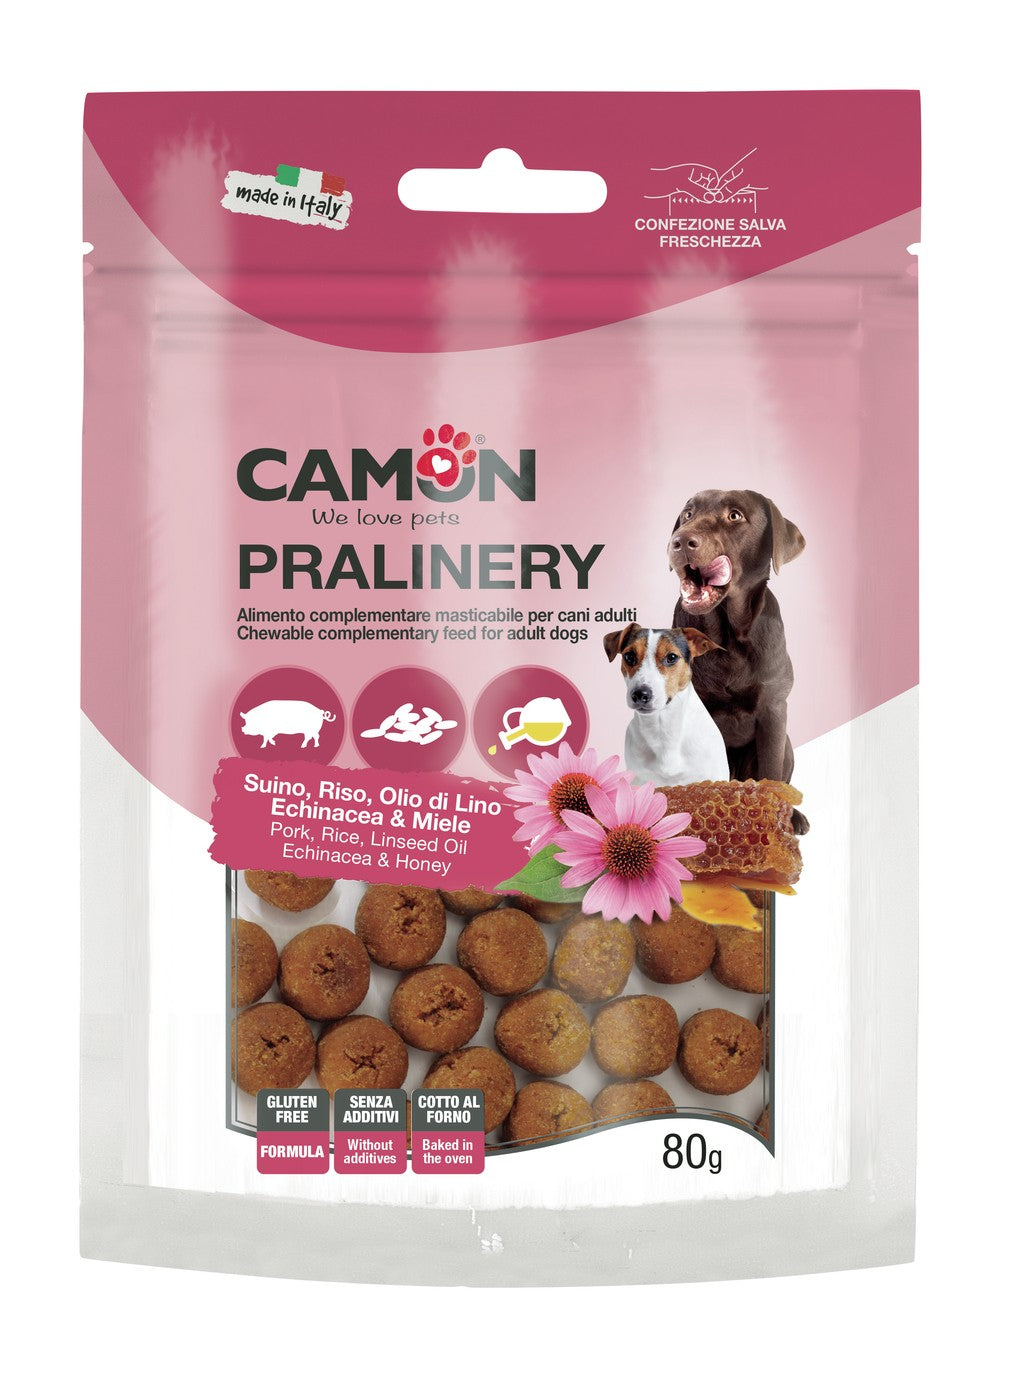 Camon - Snack al Maiale MONOPROTEICO Privo di Glutine Made in Italy per Cani Pralinery 80g